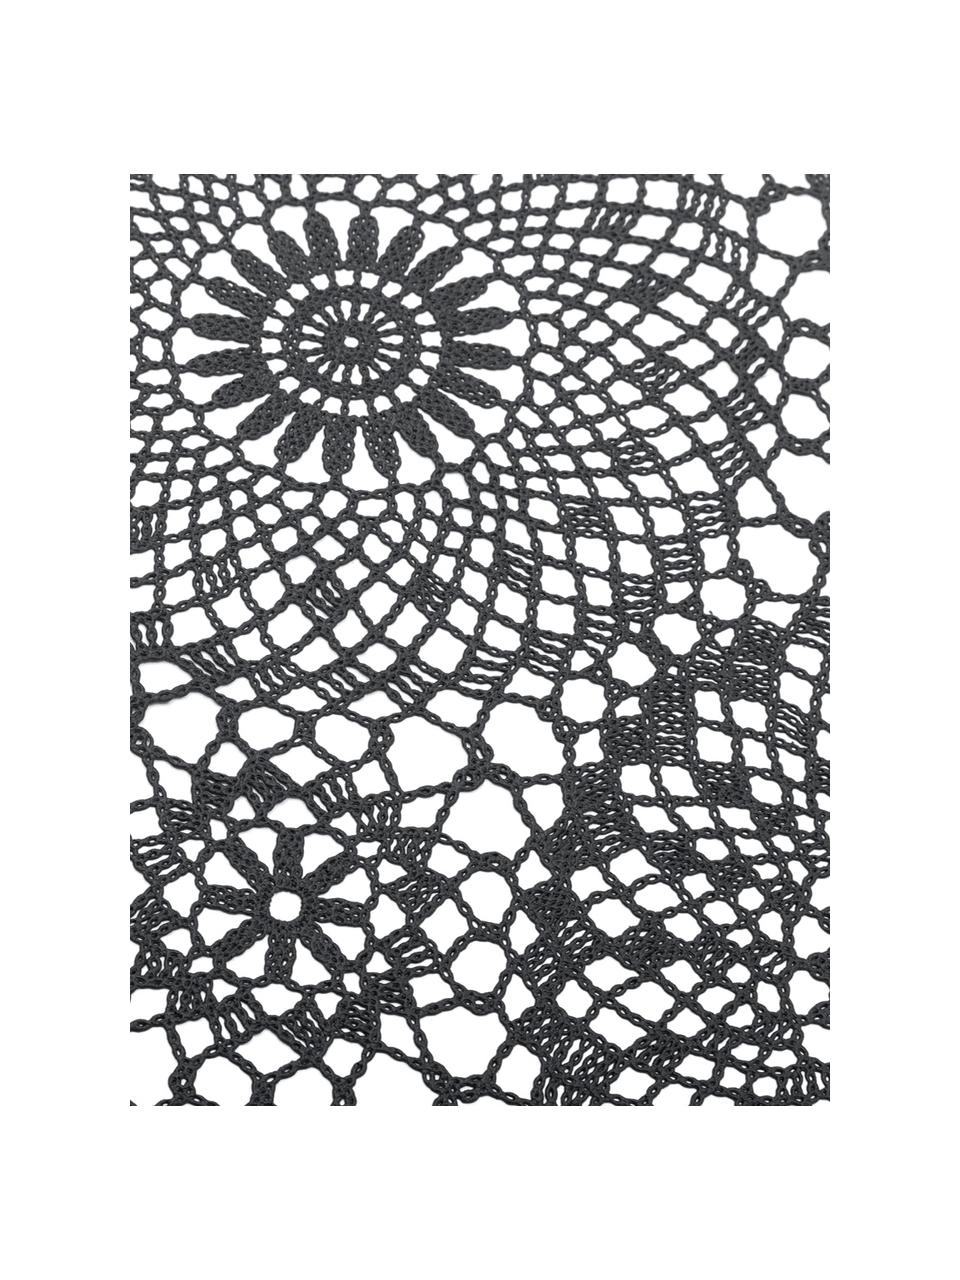 Mantel de plástico Crochet, Plástico (PVC), Negro, De 6 a 10 comensales (An 150 x L 264 cm)